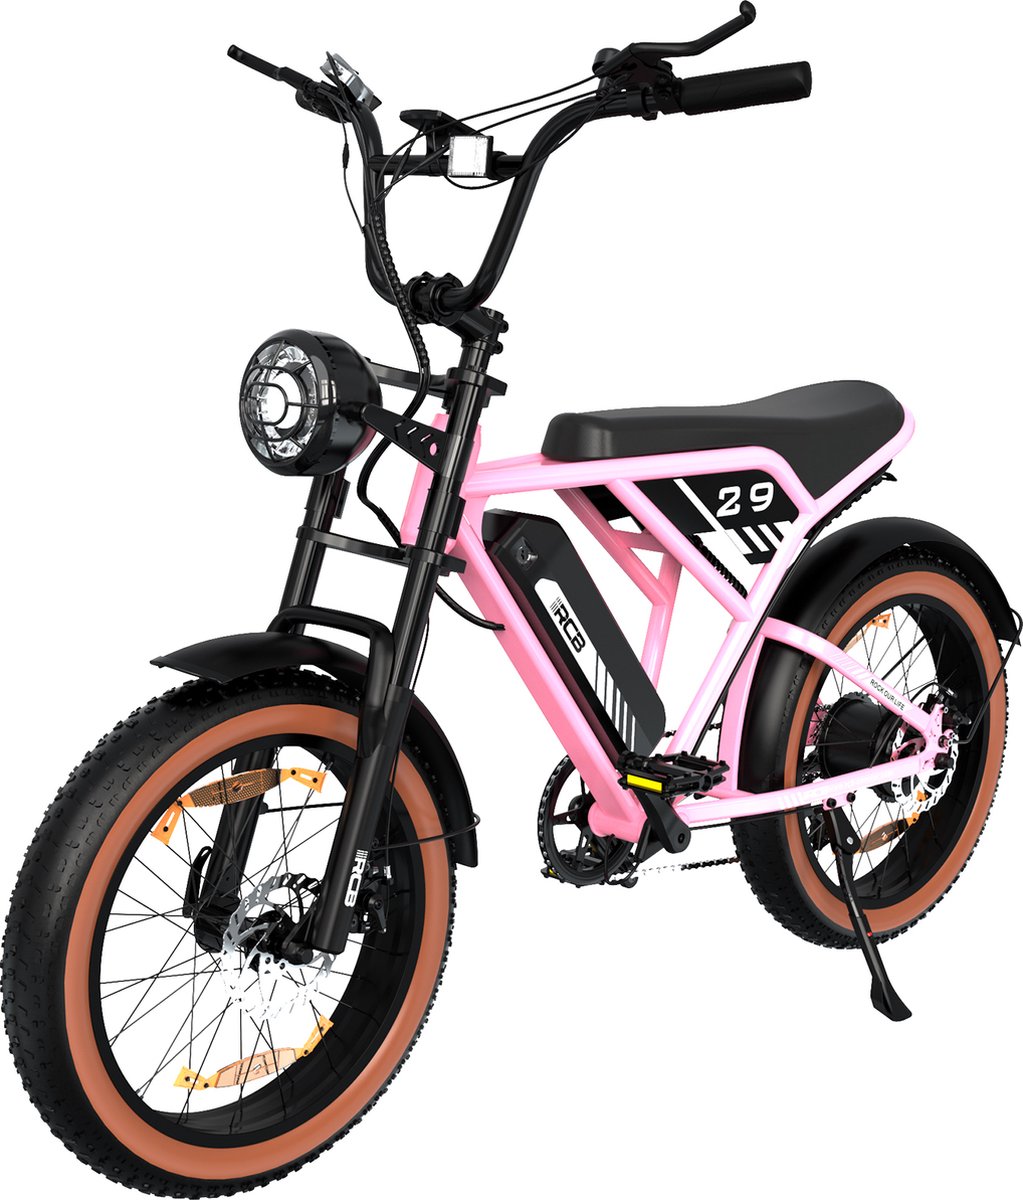 P4B - Fatbike - Elektrische Fatbike - Elektrische Fiets - Elektrische Mountainbike - E bike - Roze - 1 jaar garantie - Legaal openbare weg